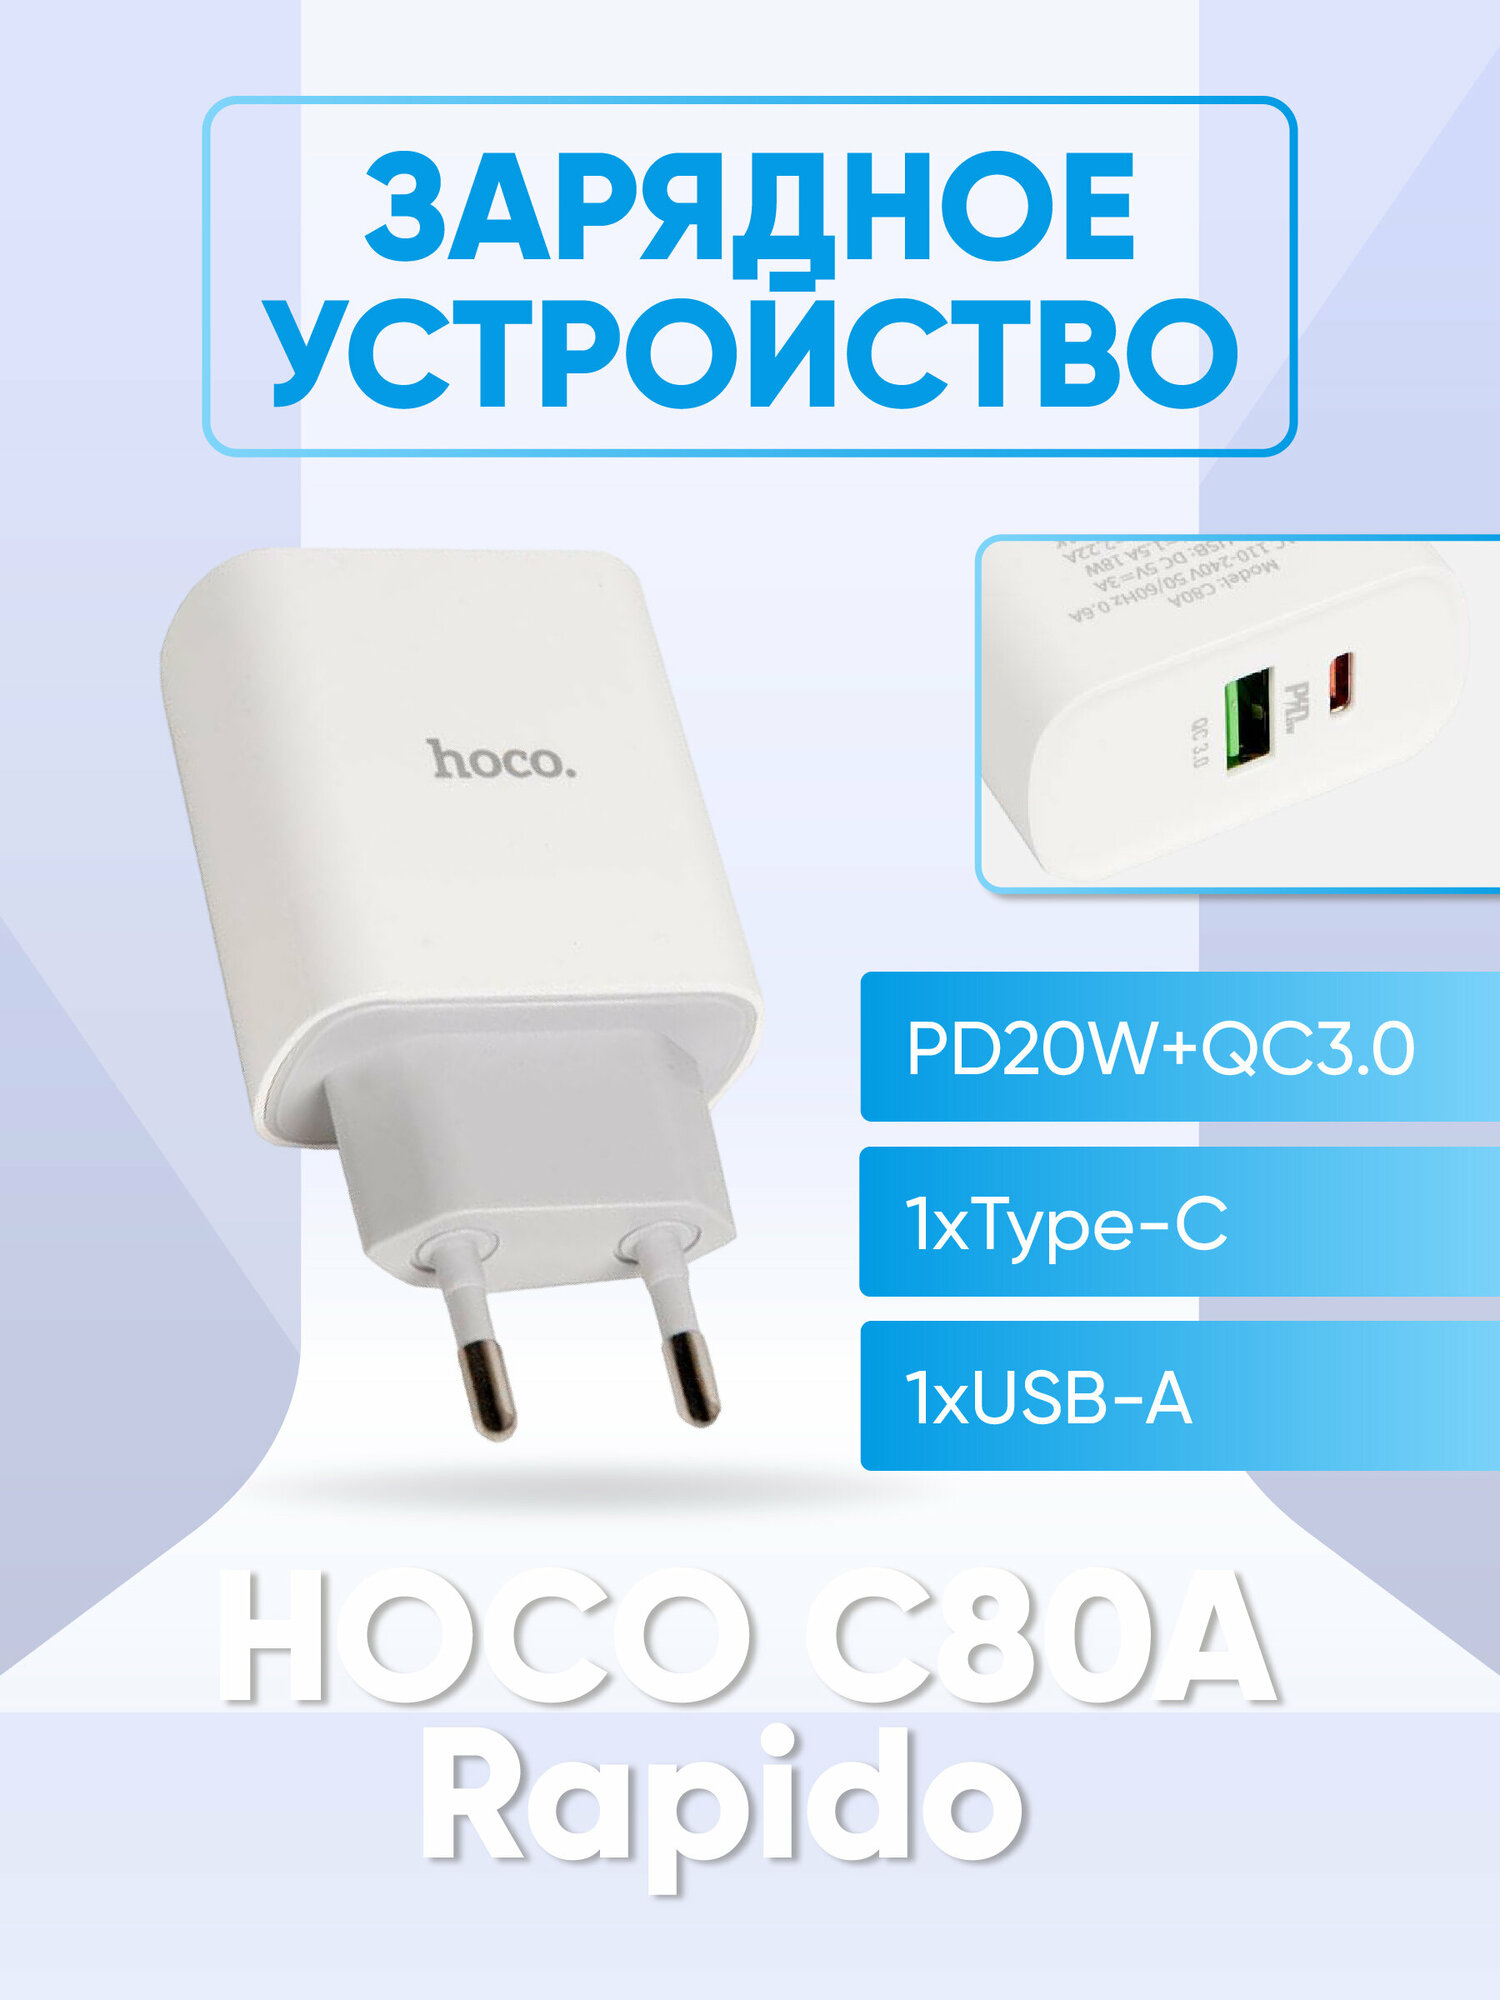 Сетевое зарядное устройство Hoco C80A Rapido, USB+Type-C, PD20W+QC3.0, белый (40519) - фото №7